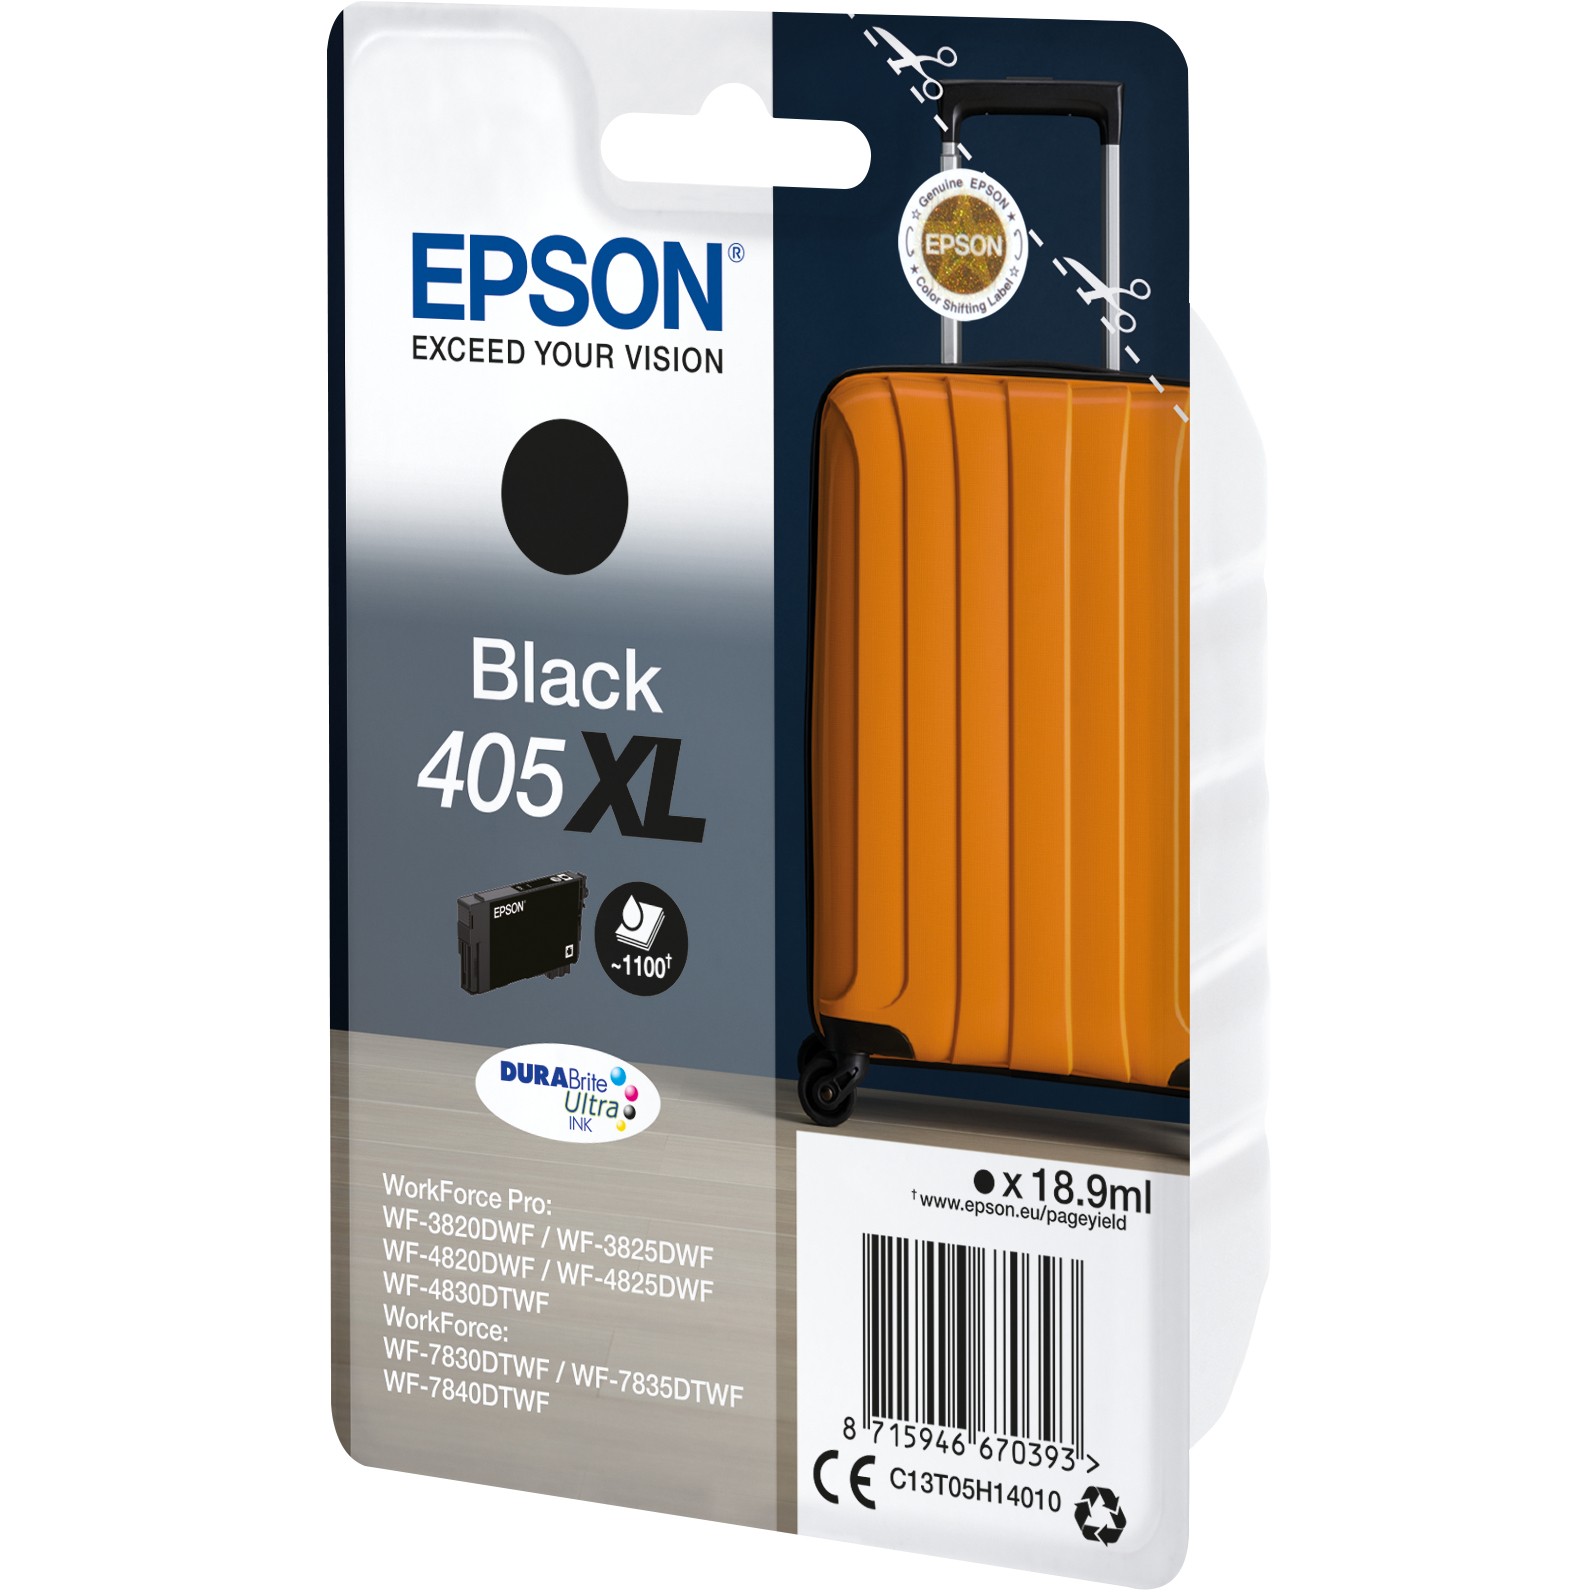 EPSON Tinte schwarz 18.9ml